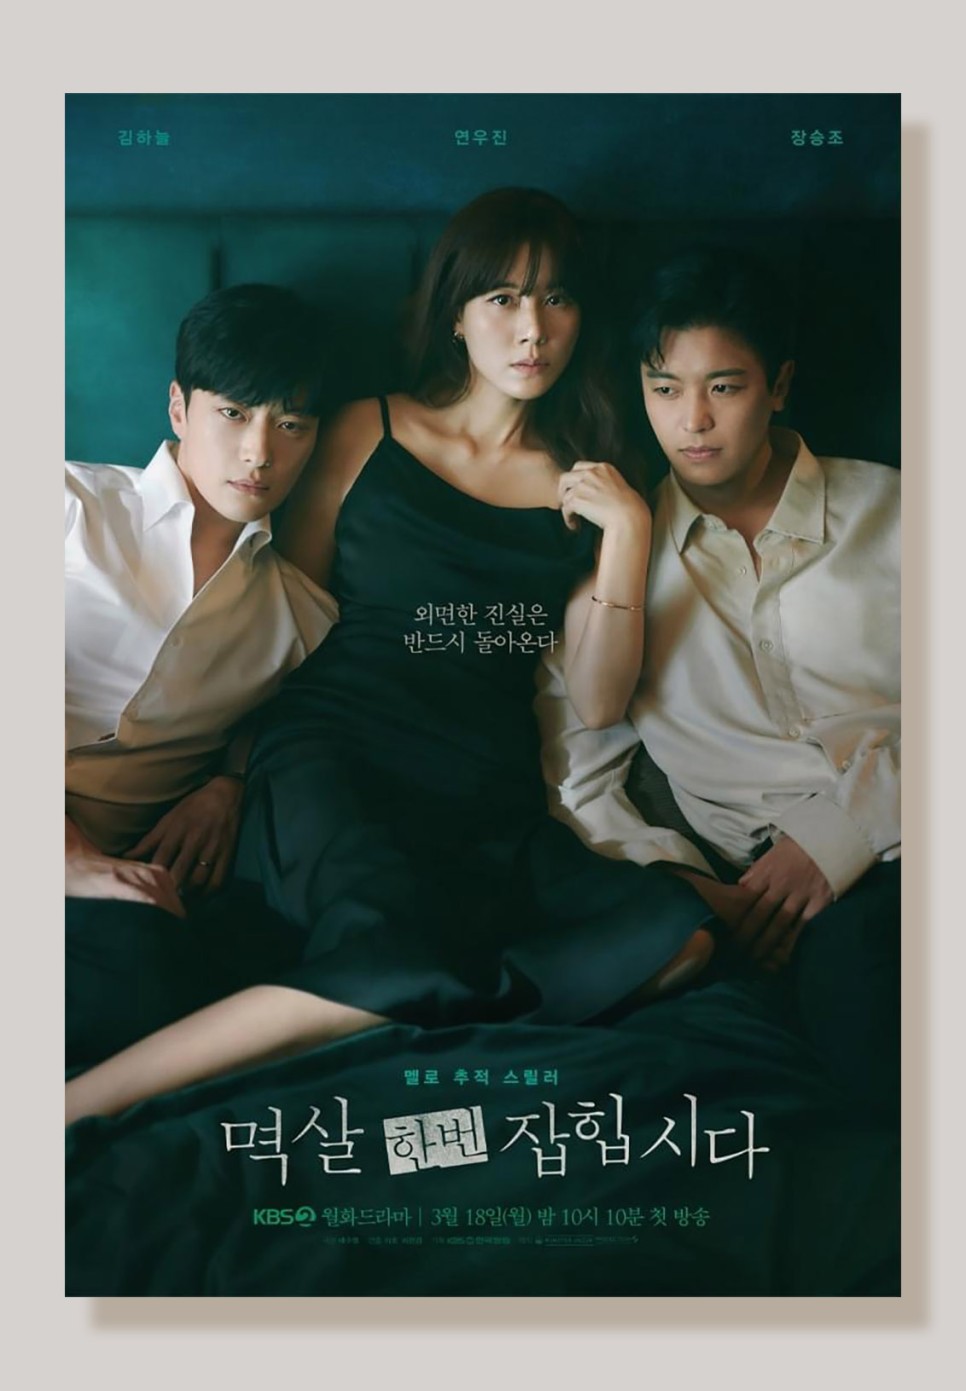 KBS2 멱살 한번 잡힙시다 김하늘 연우진 장승조의 멜로 스릴러 월화 드라마 등장인물 정보